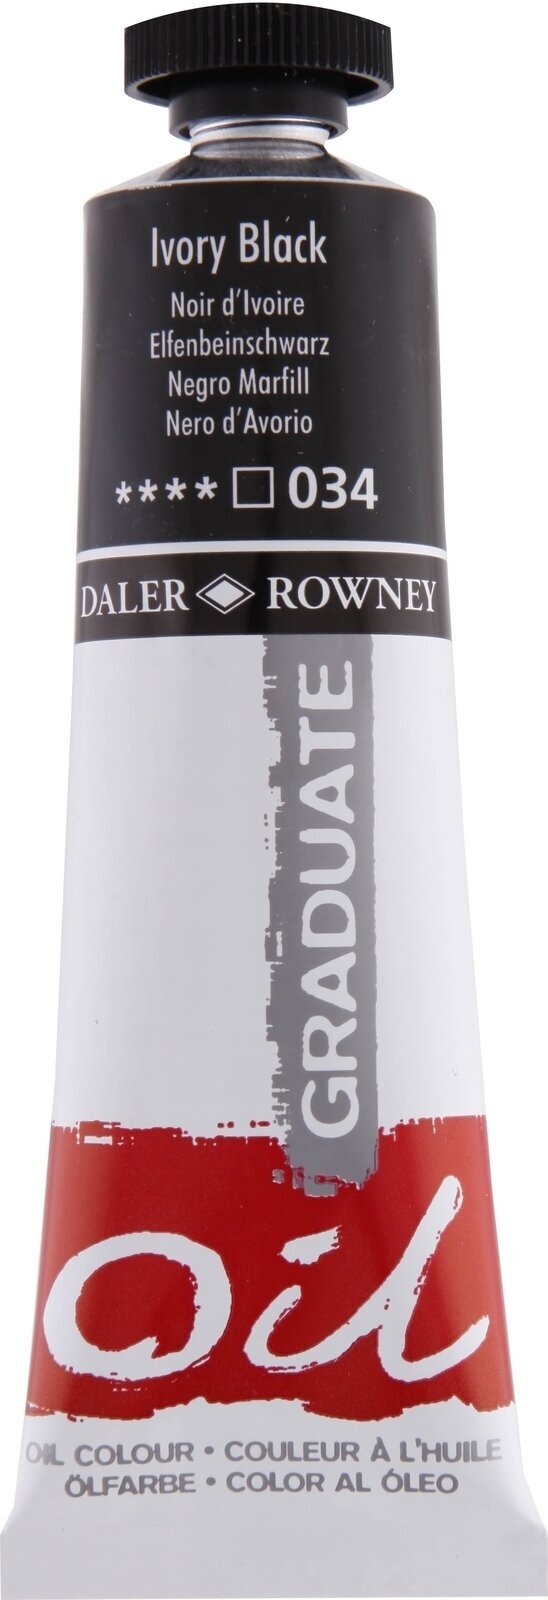 Oil colour Daler Rowney Graduate Oil Paint Ivory Black 38 ml 1 pc